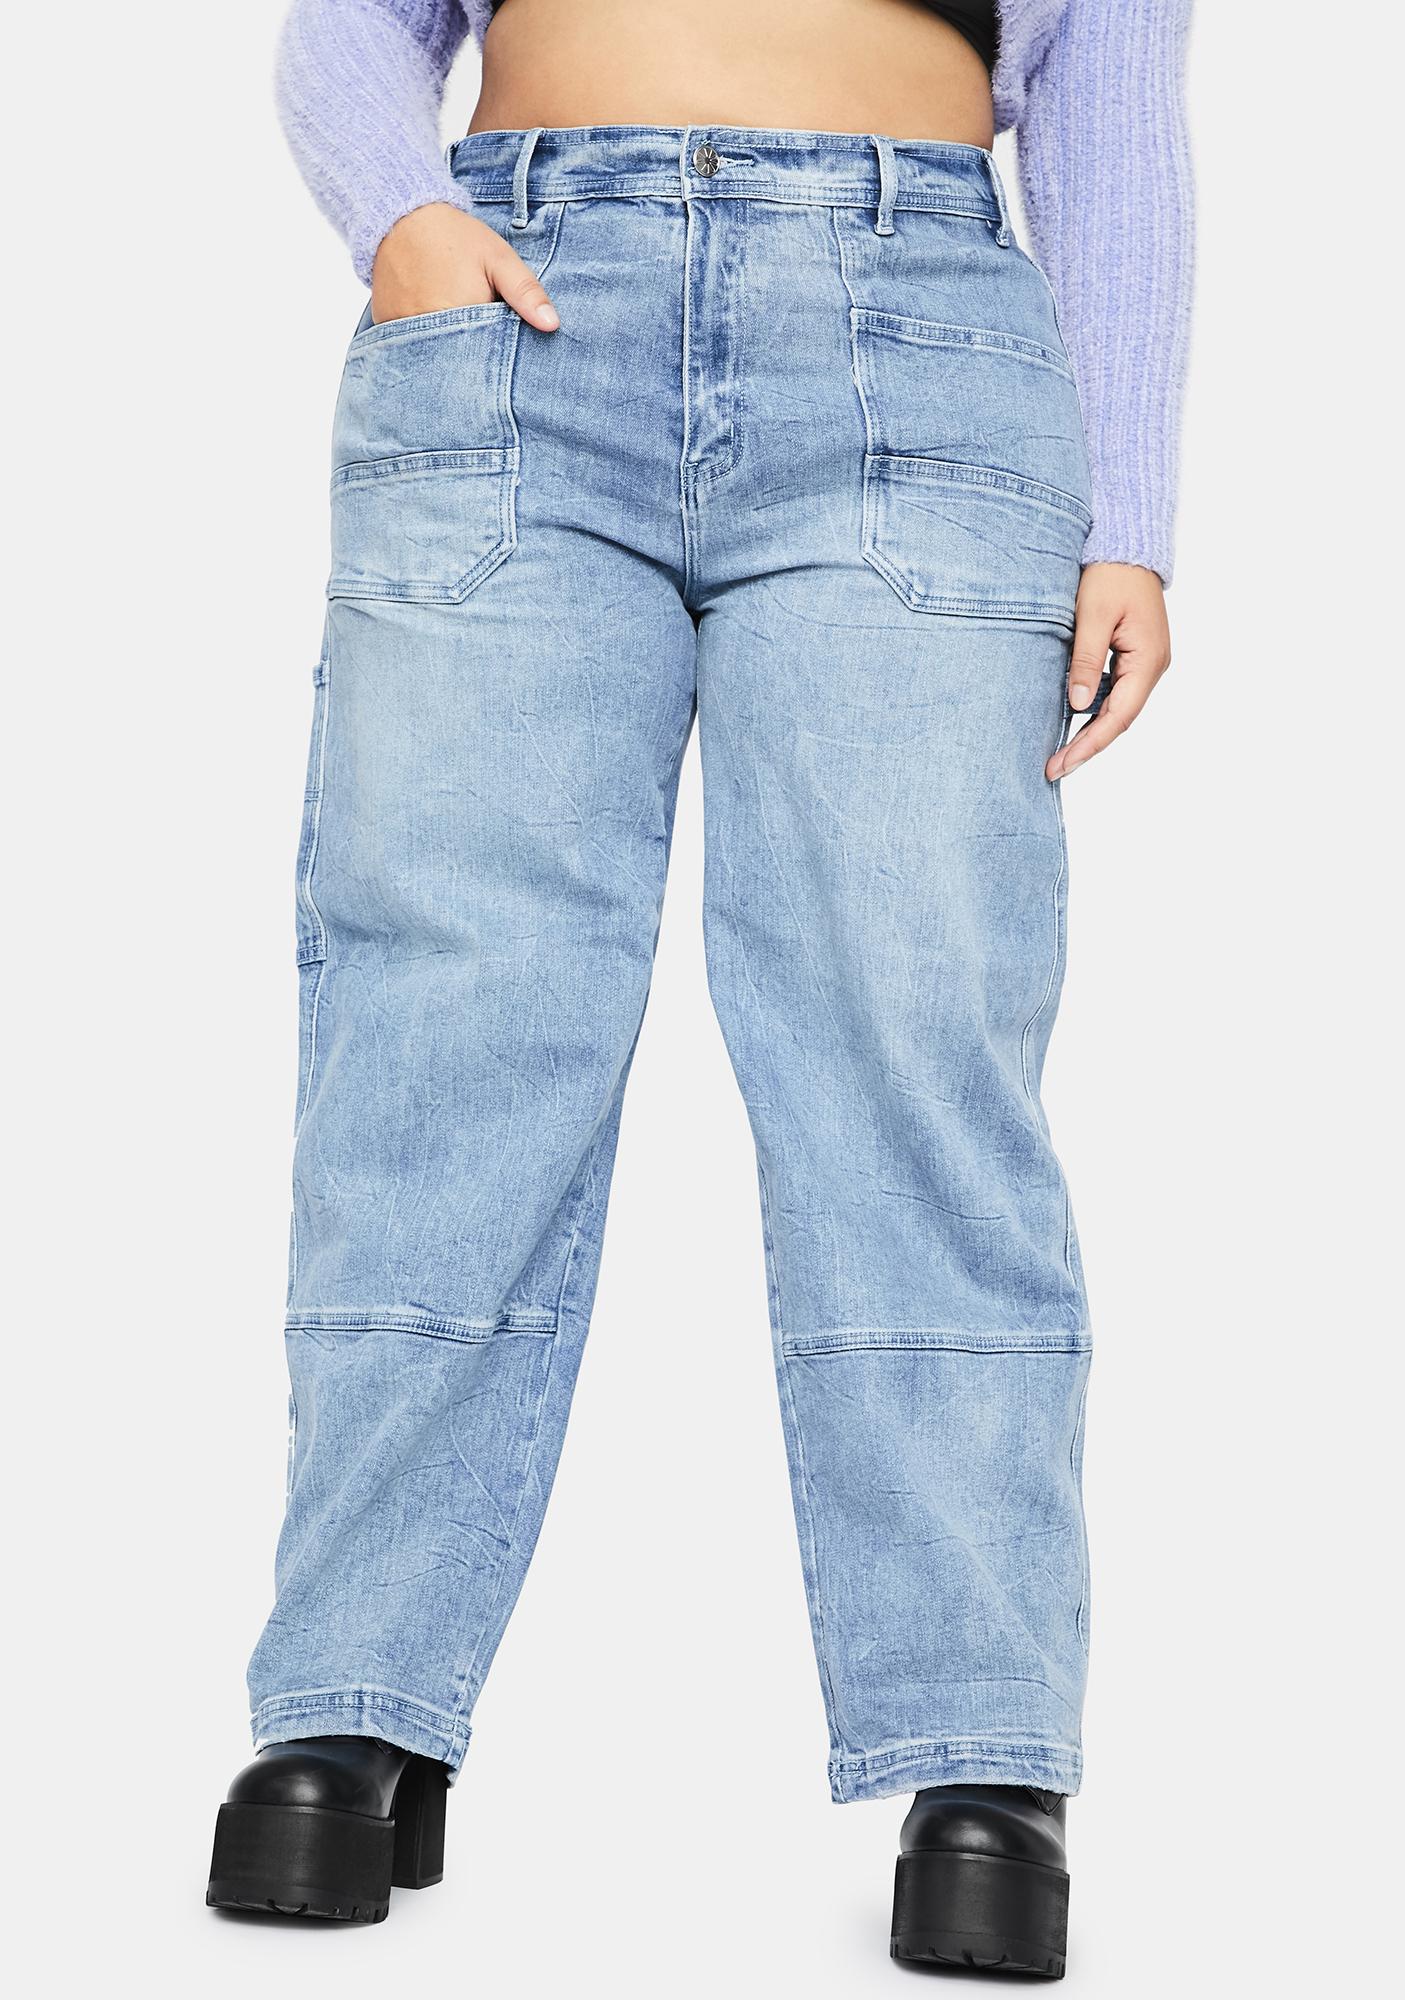 daytrip jeans size chart